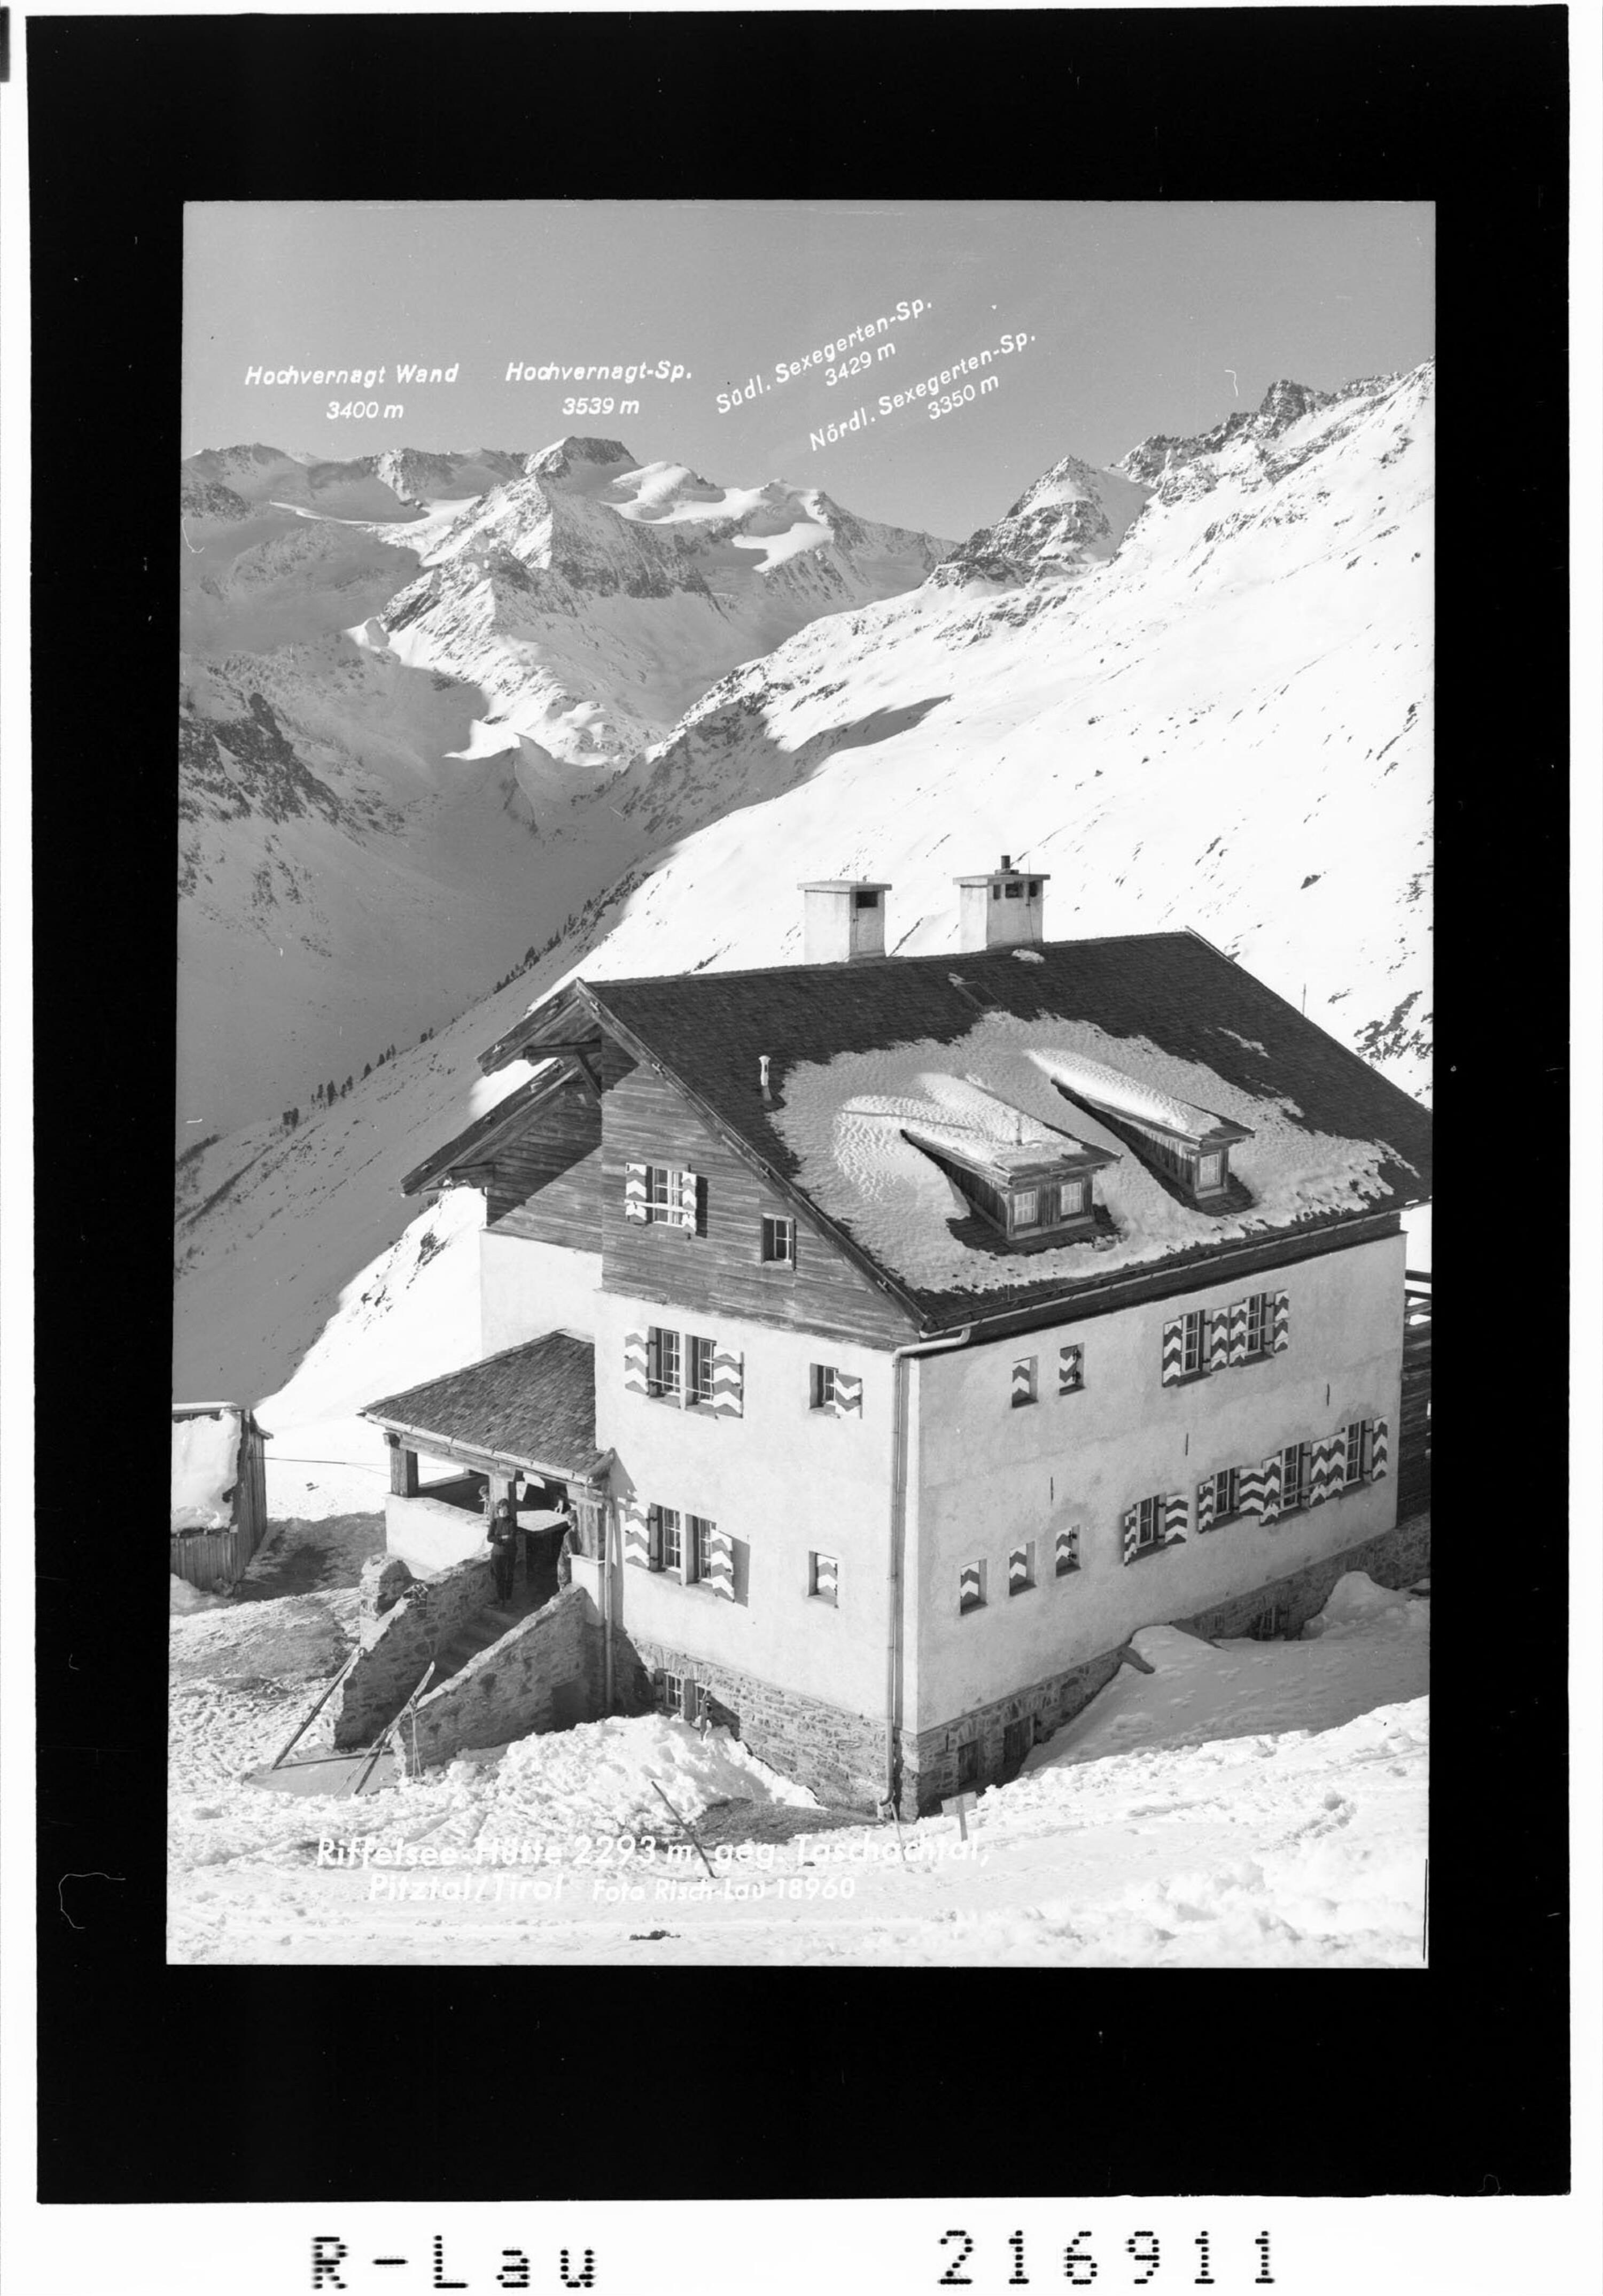 Riffelsee Hütte 2293 m gegen Taschachtal Pitztal / Tirol></div>


    <hr>
    <div class=